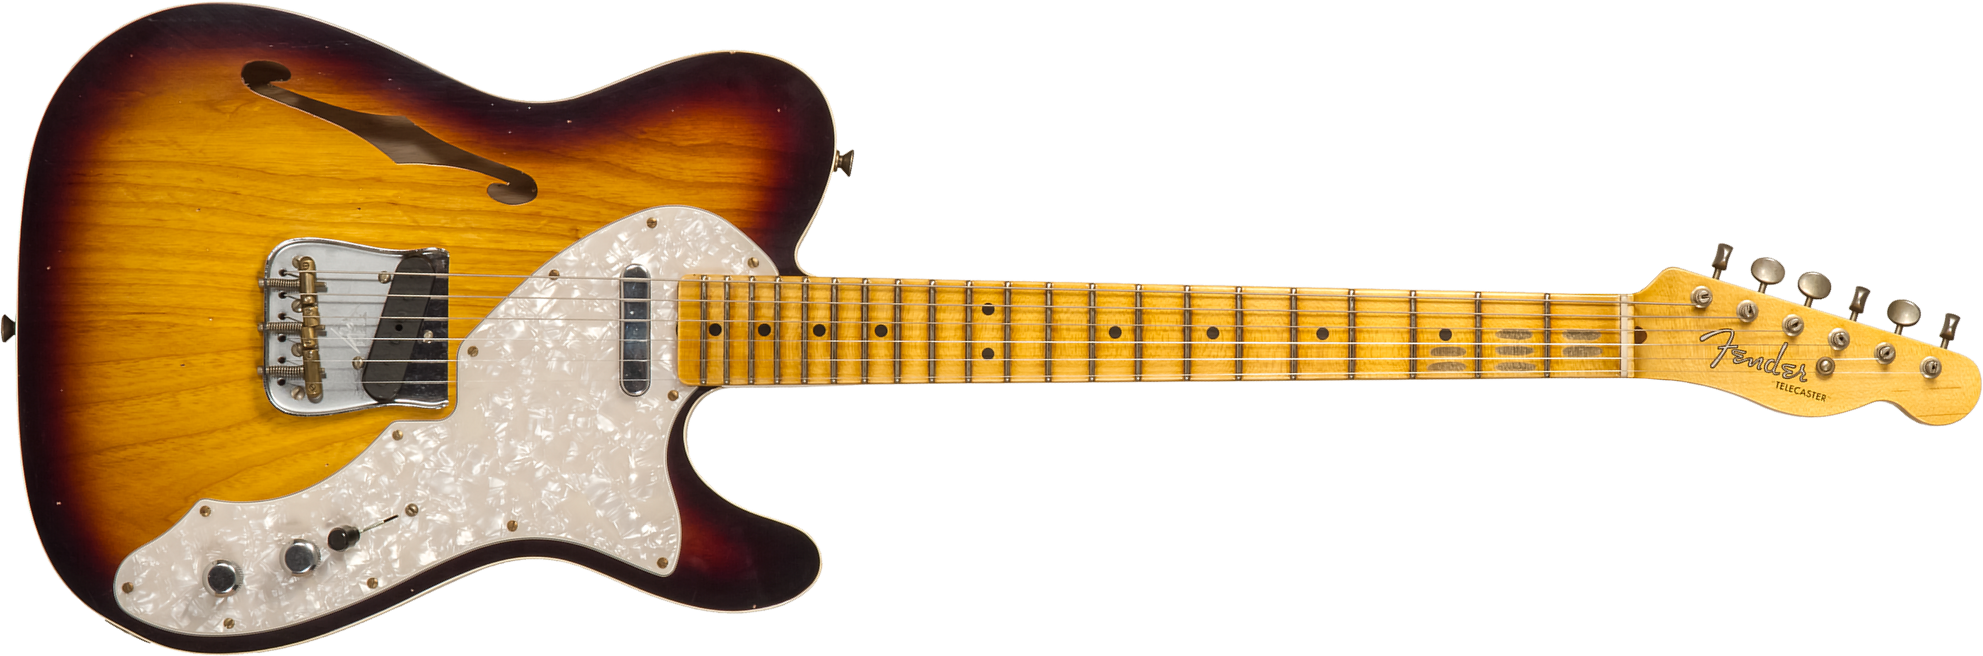 Fender Custom Shop Tele Thinline 50s Mn #cz574212 - Journeyman Relic Aged 2-color Sunburst - Guitarra eléctrica con forma de tel - Main picture